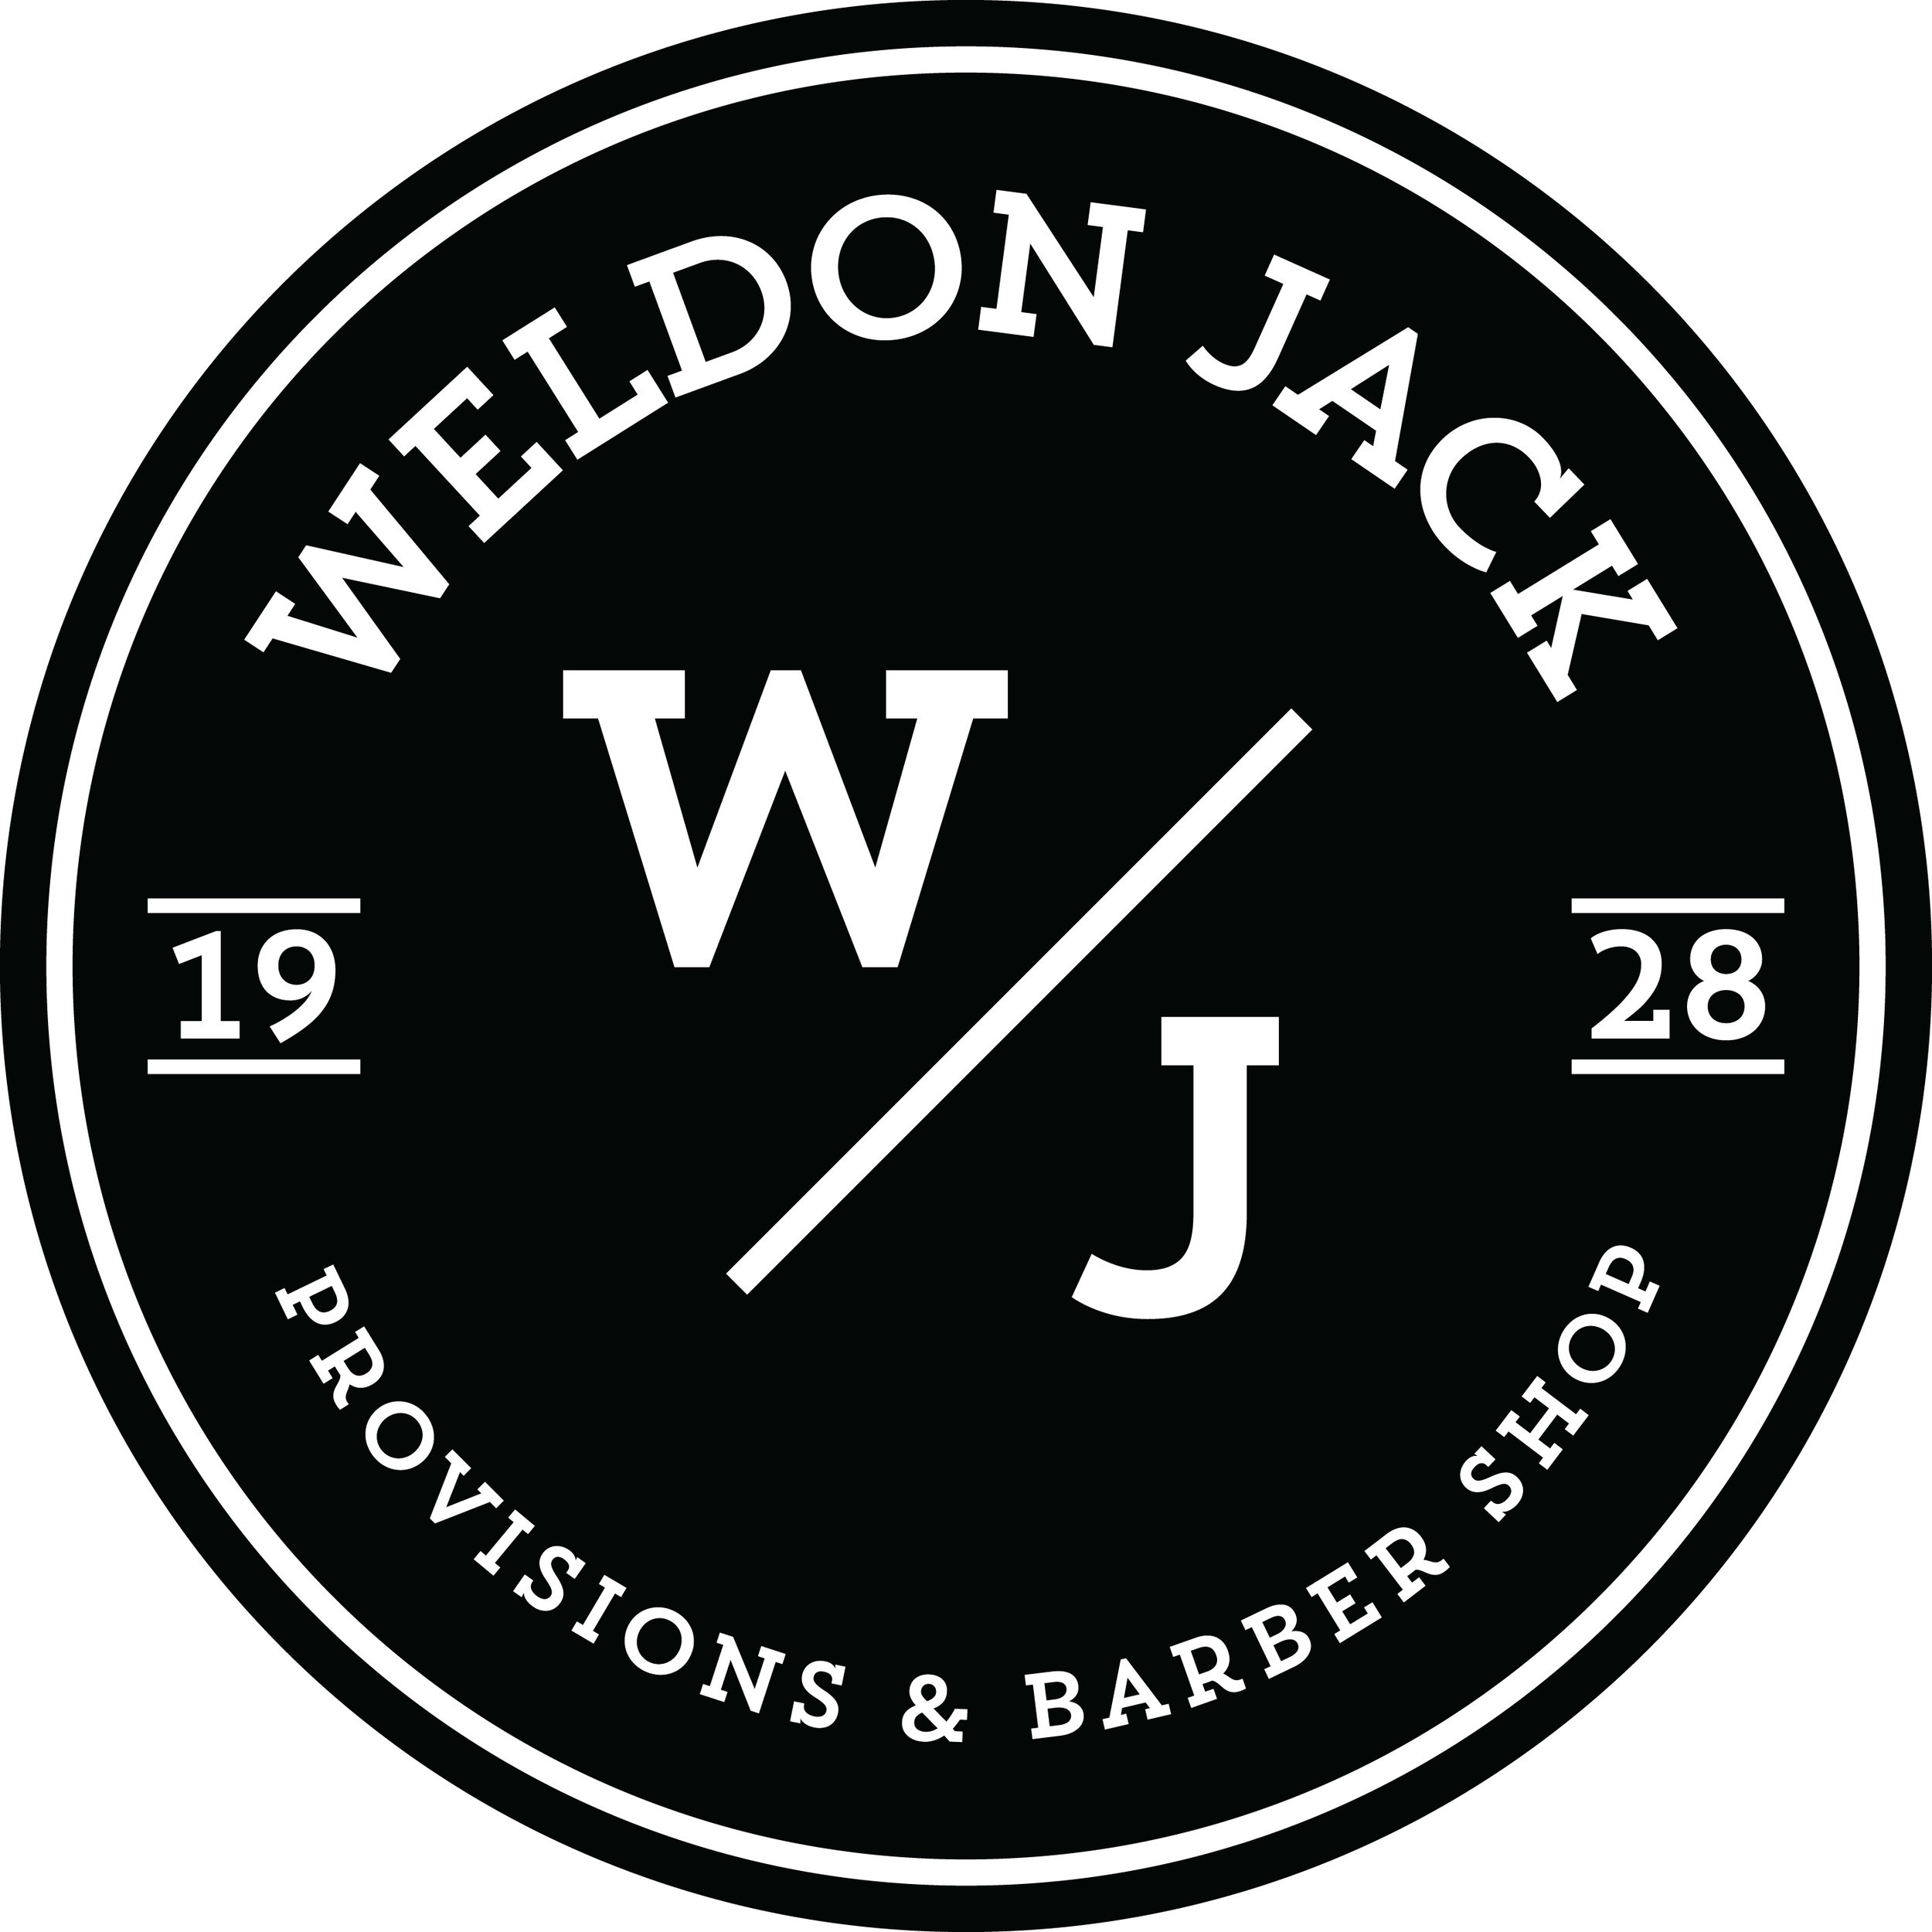 Weldon Jack